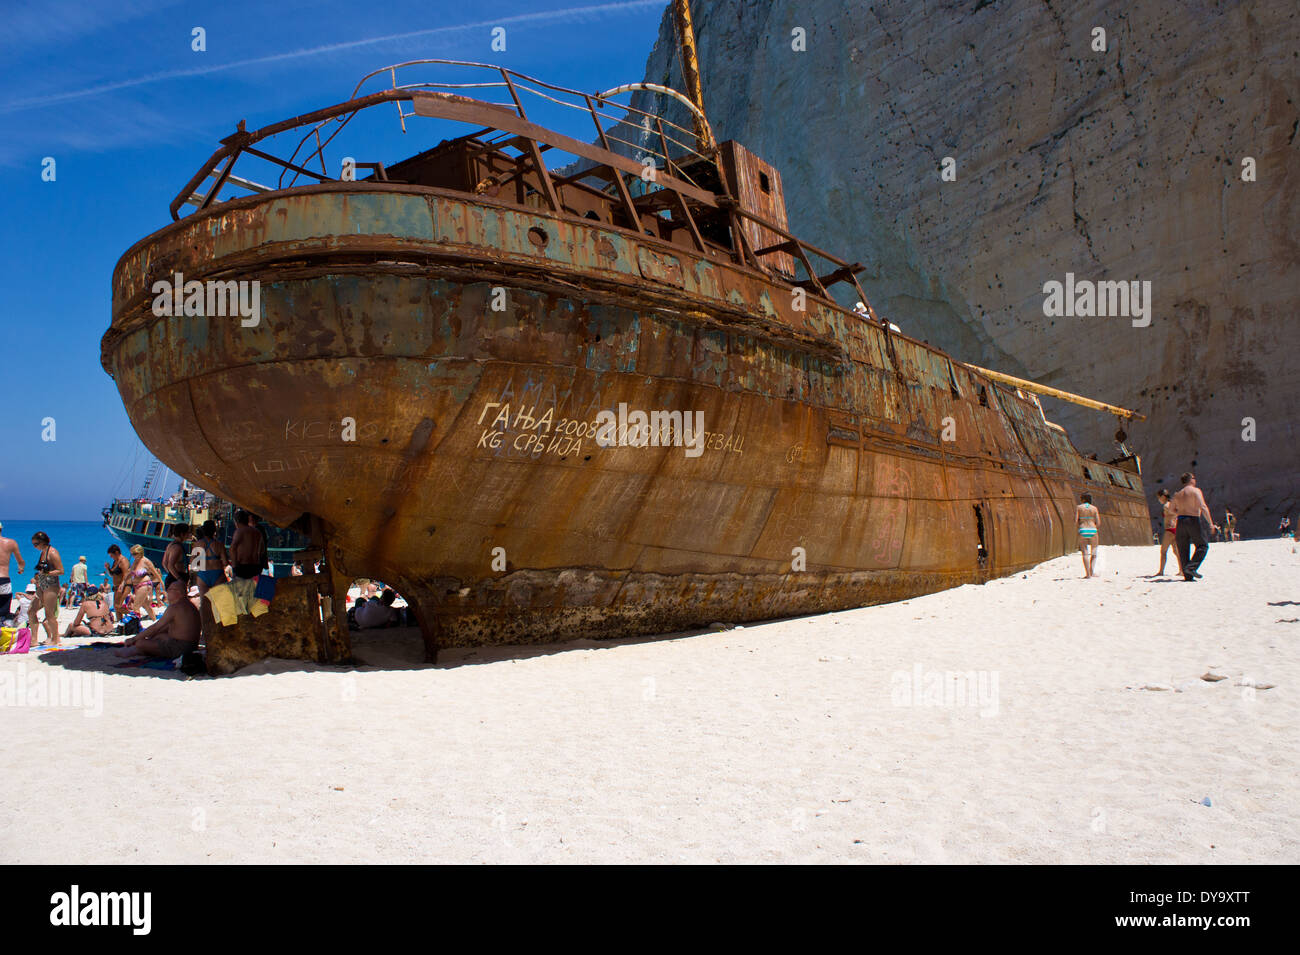 Relitto sul naufragio spiaggia con turistico e tourboat, isola di Zante, Grecia Foto Stock